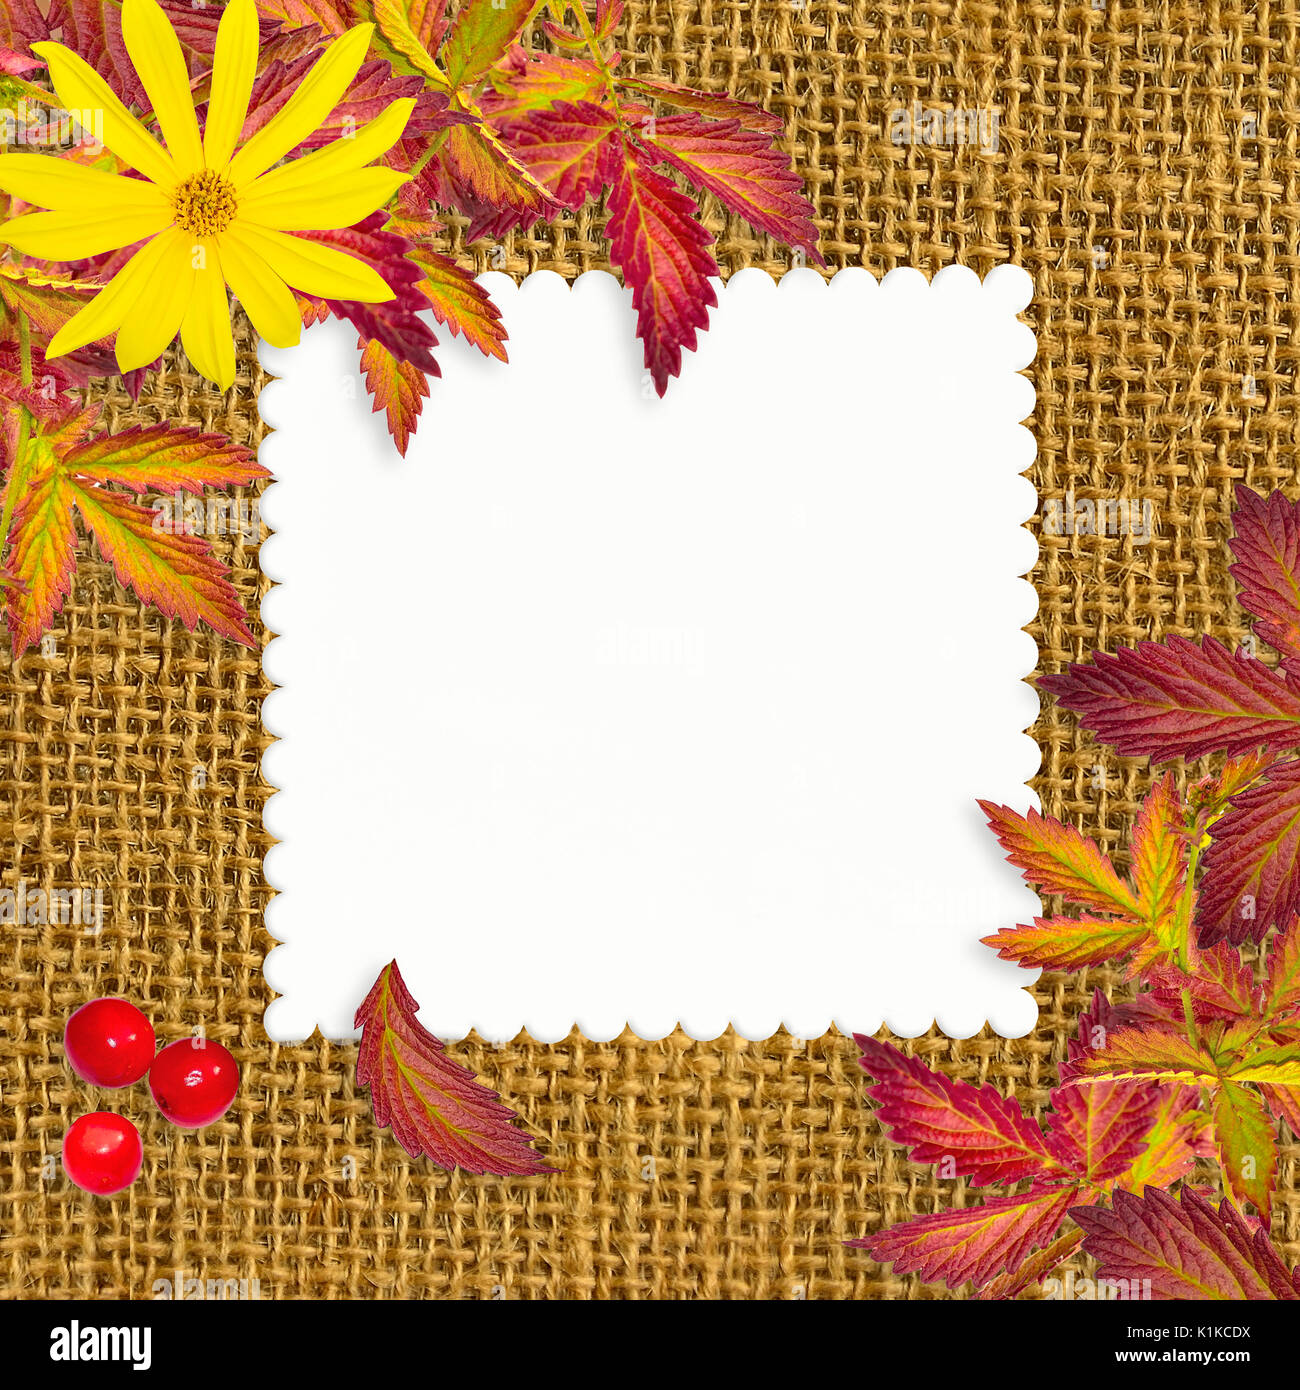 Grunge sacs automne fond blanc avec feuille de papier blanc, feuilles colorées, jaune,rouge et fleurs baies rowan. Toile de fond de carte de souhaits t Banque D'Images